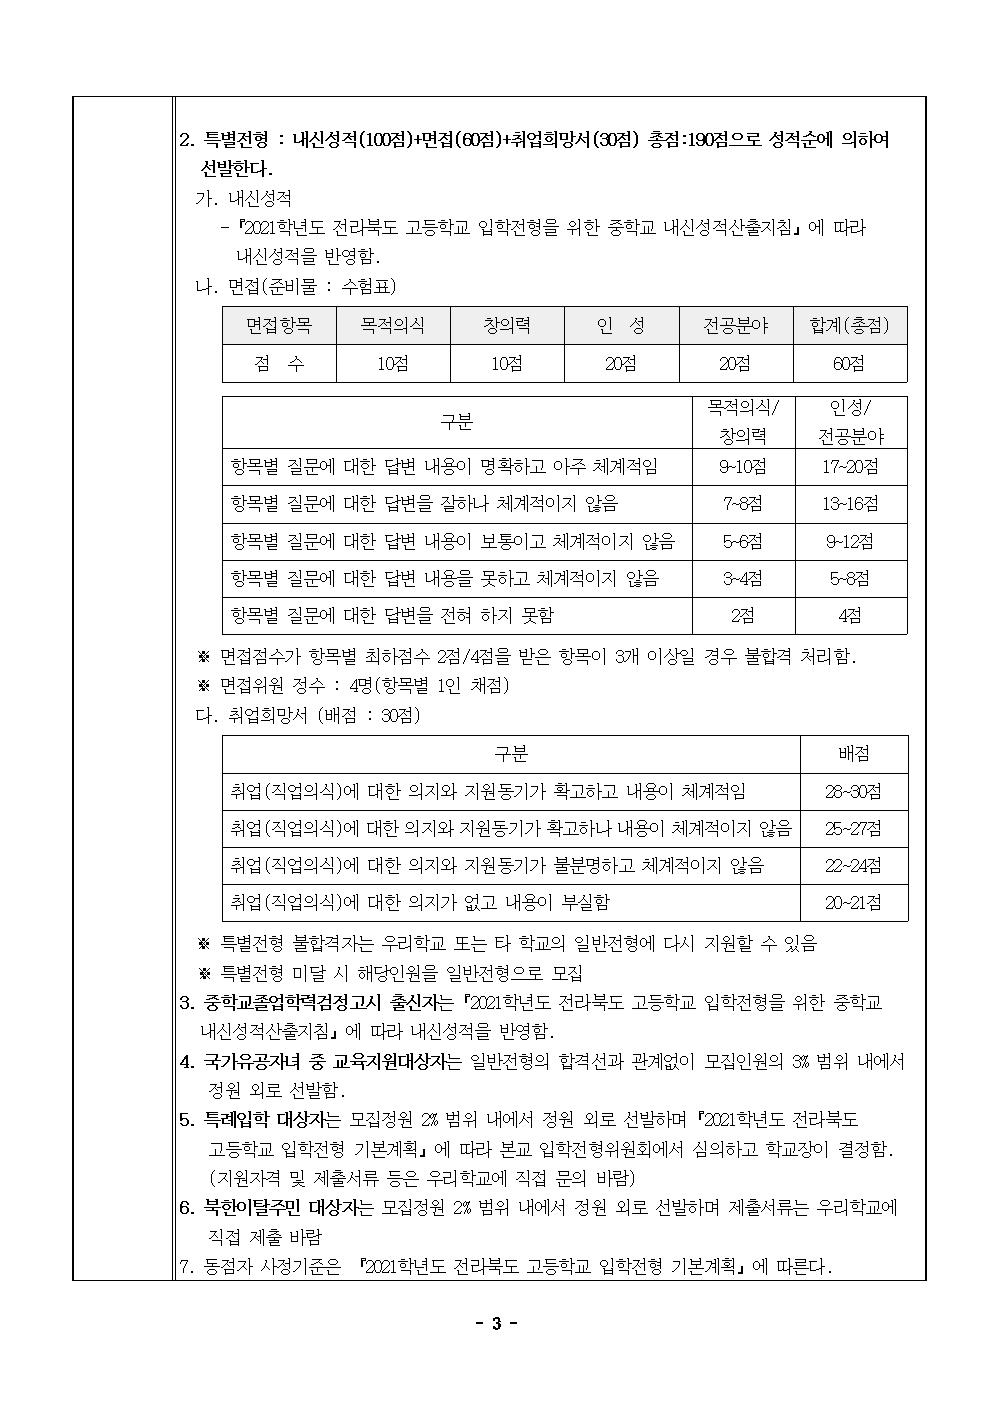 2021학년도 한국게임과학고등학교 신입생 입학 전형요강(최종승인본)003